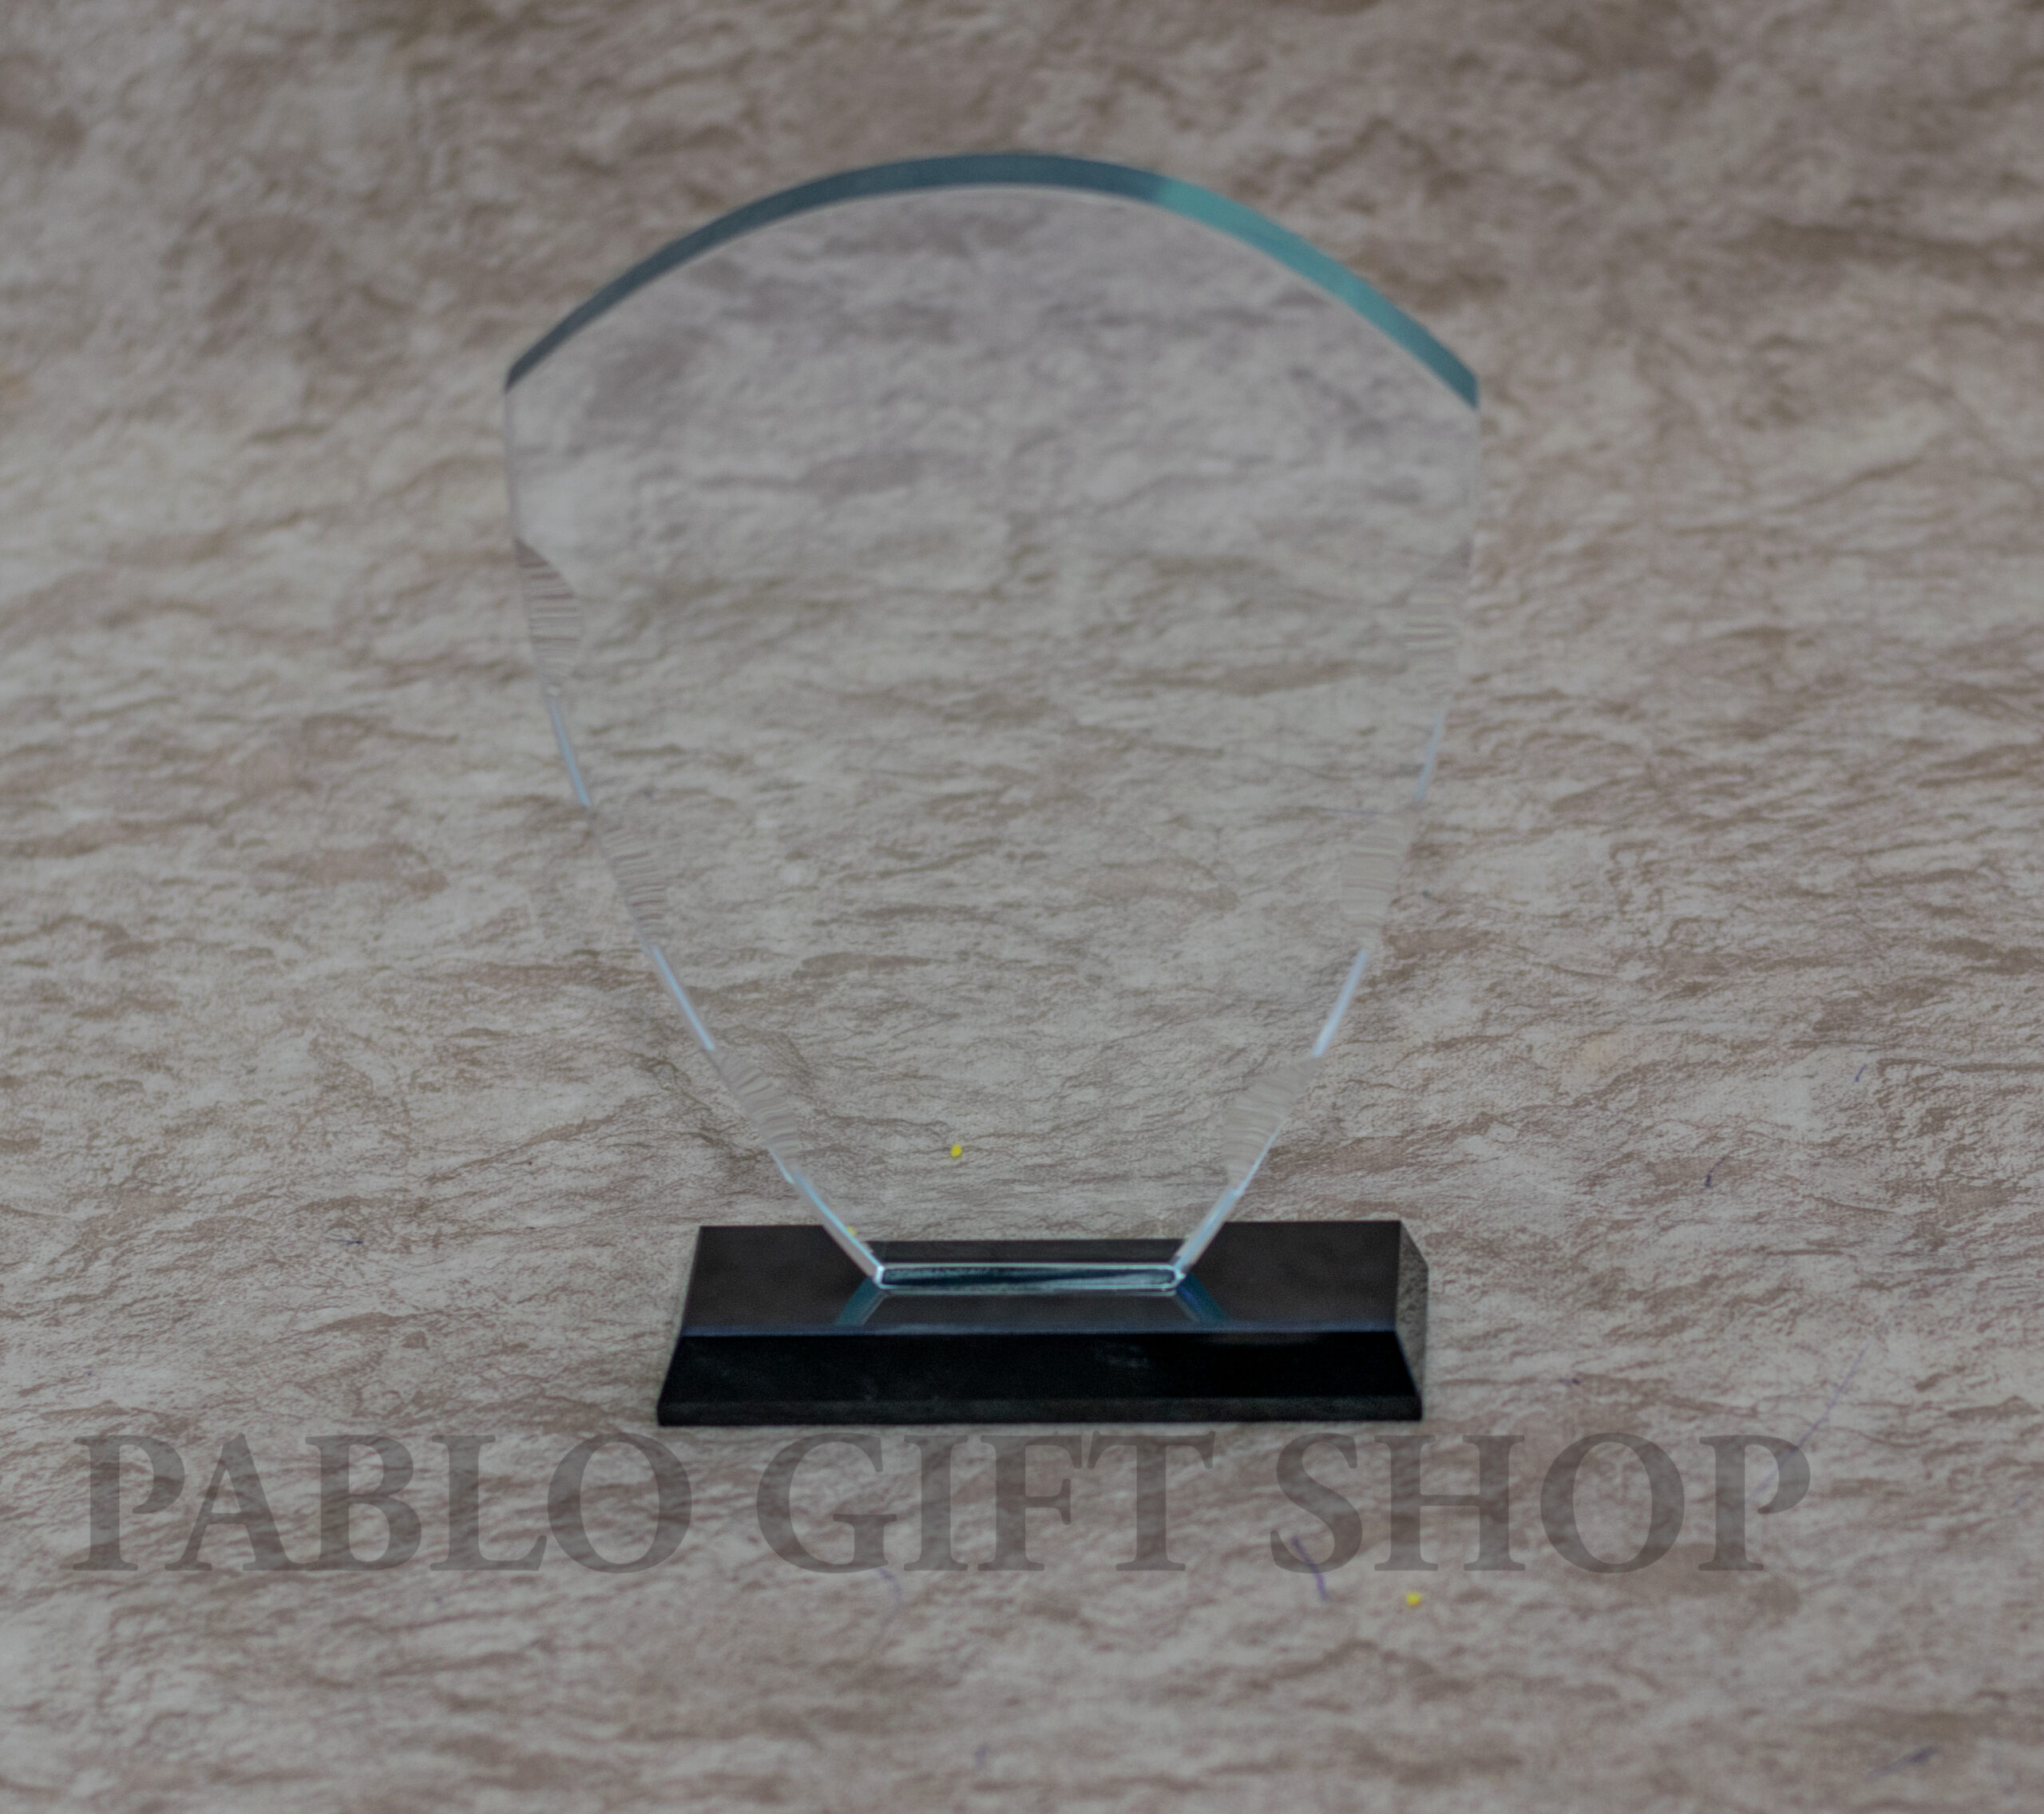 Arc Shaped Crystal Clear Award Trophy